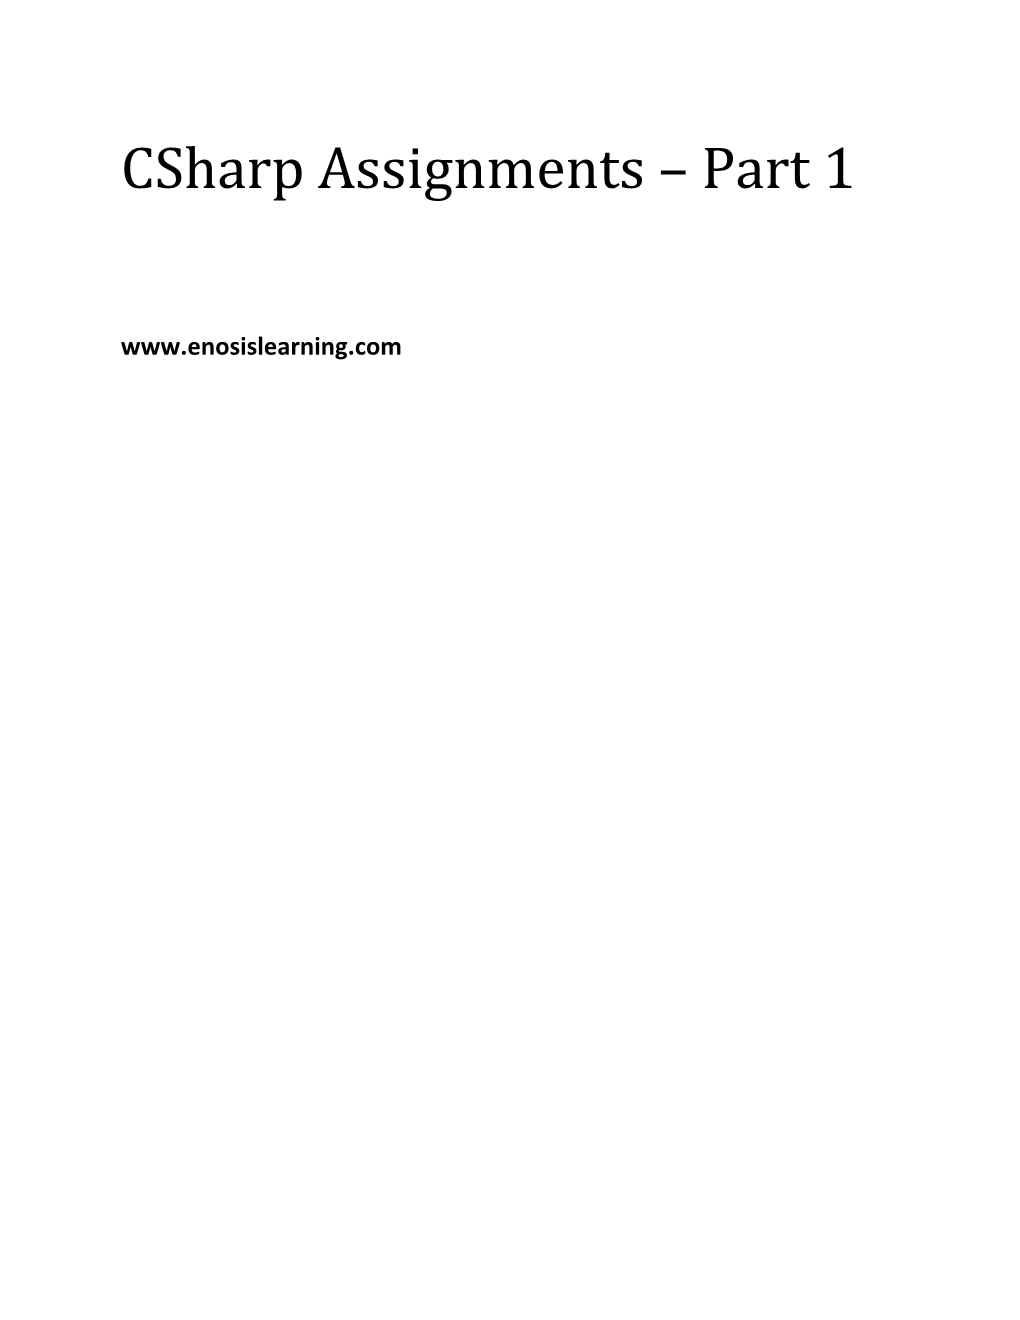 Csharp Assignments Part 1